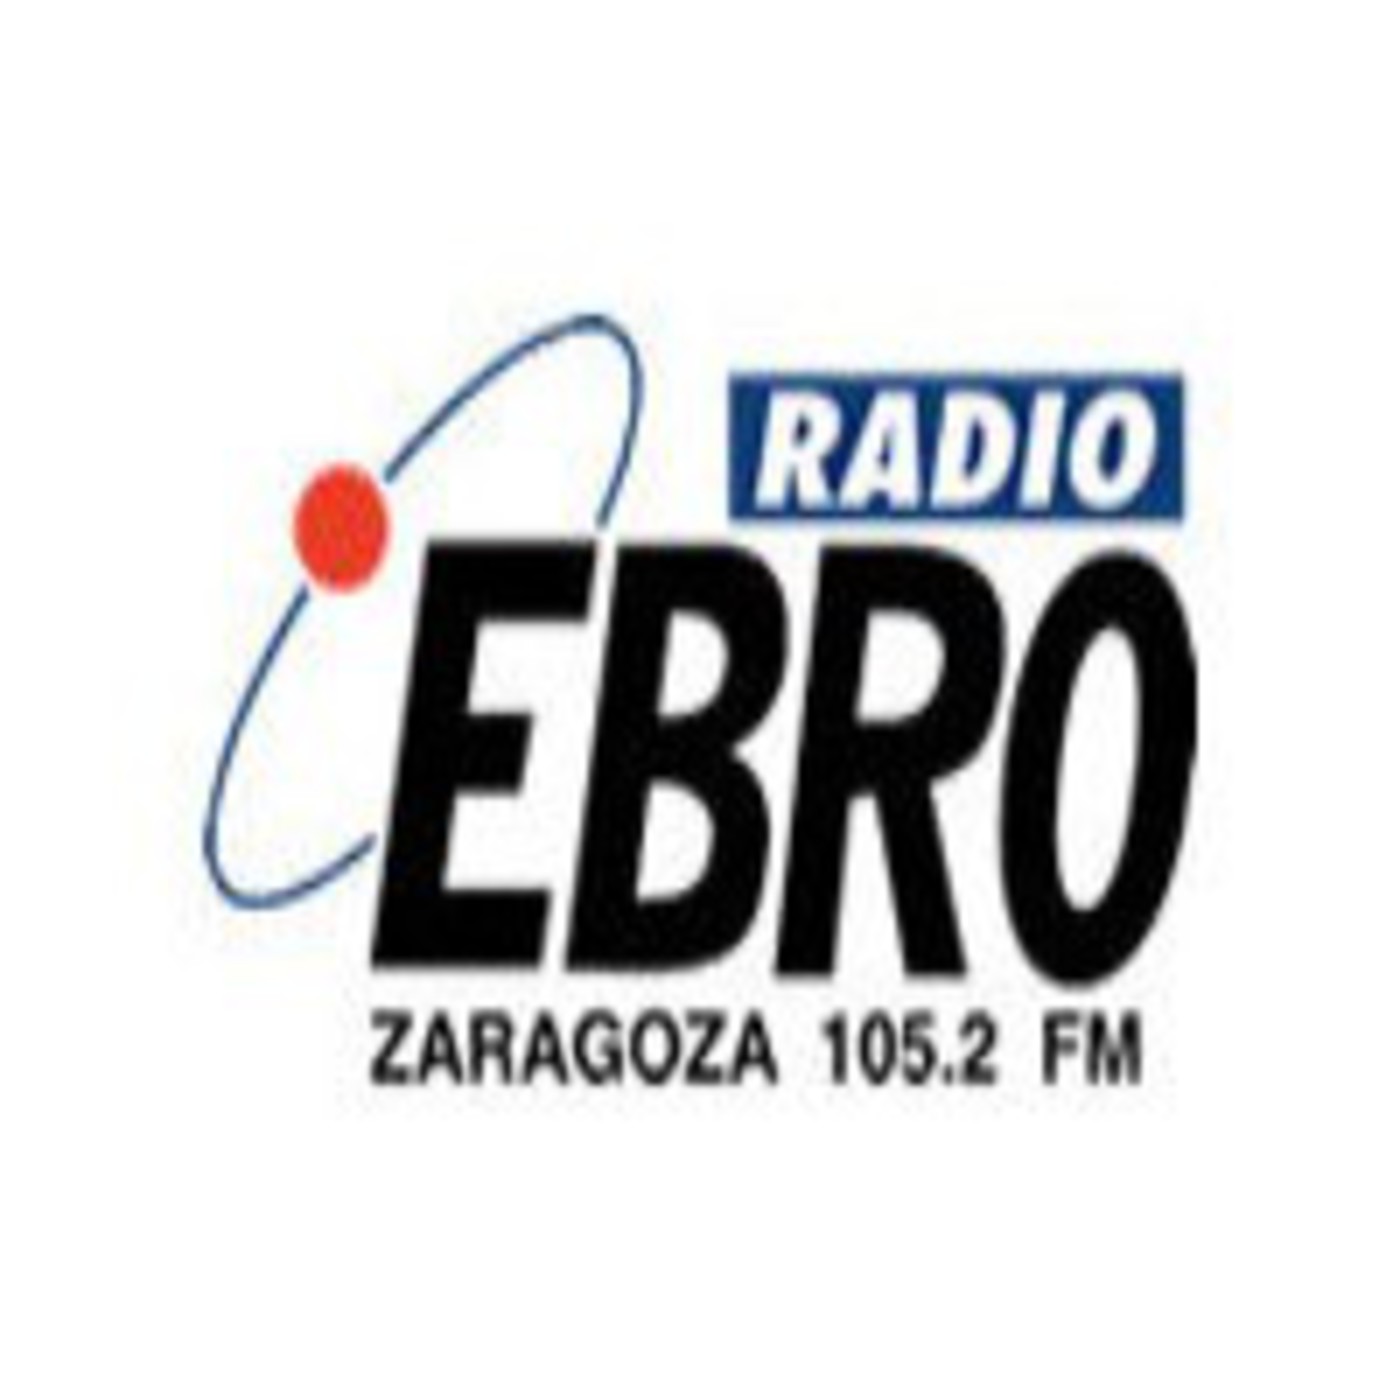 Cartero Anciano emoción Podcast Radio Ebro - Podcast en iVoox